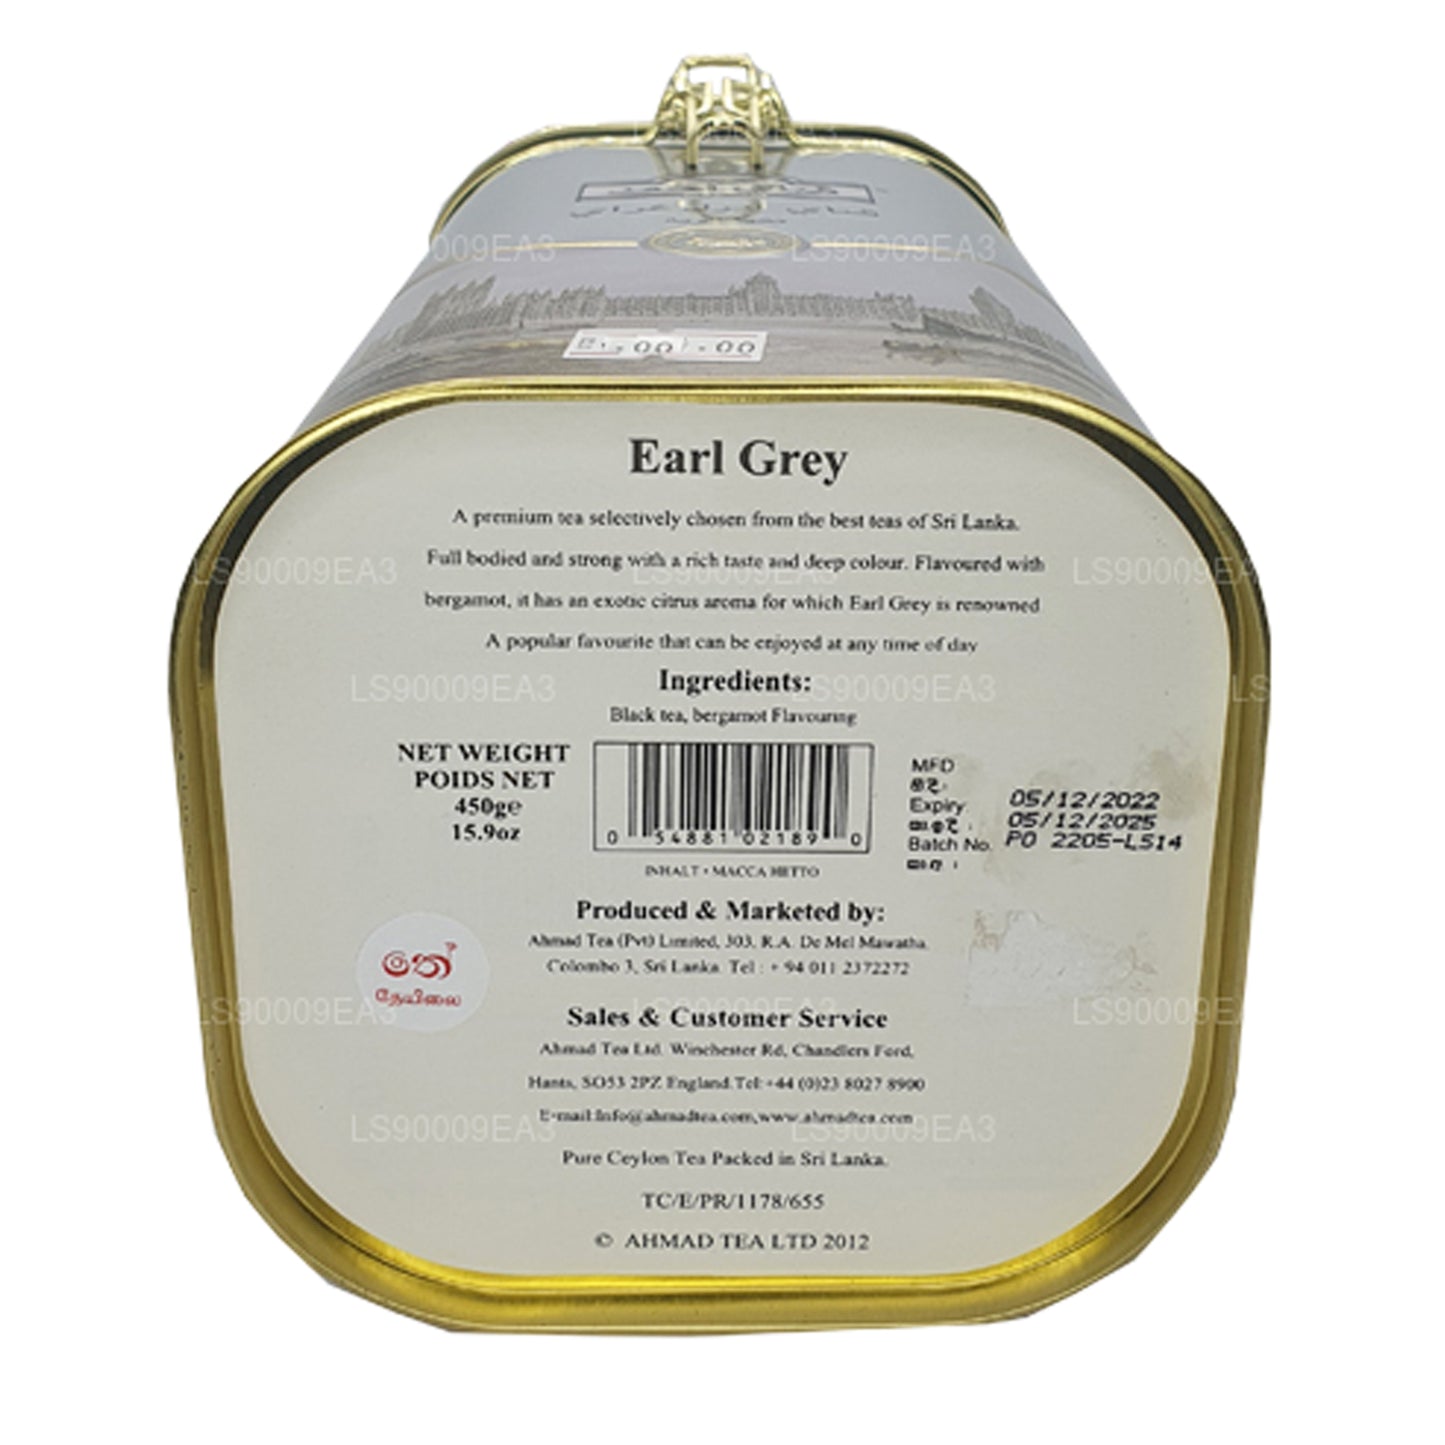 Ahamad Earl Grey Schwarztee mit Bergamottegeschmack (450 g)